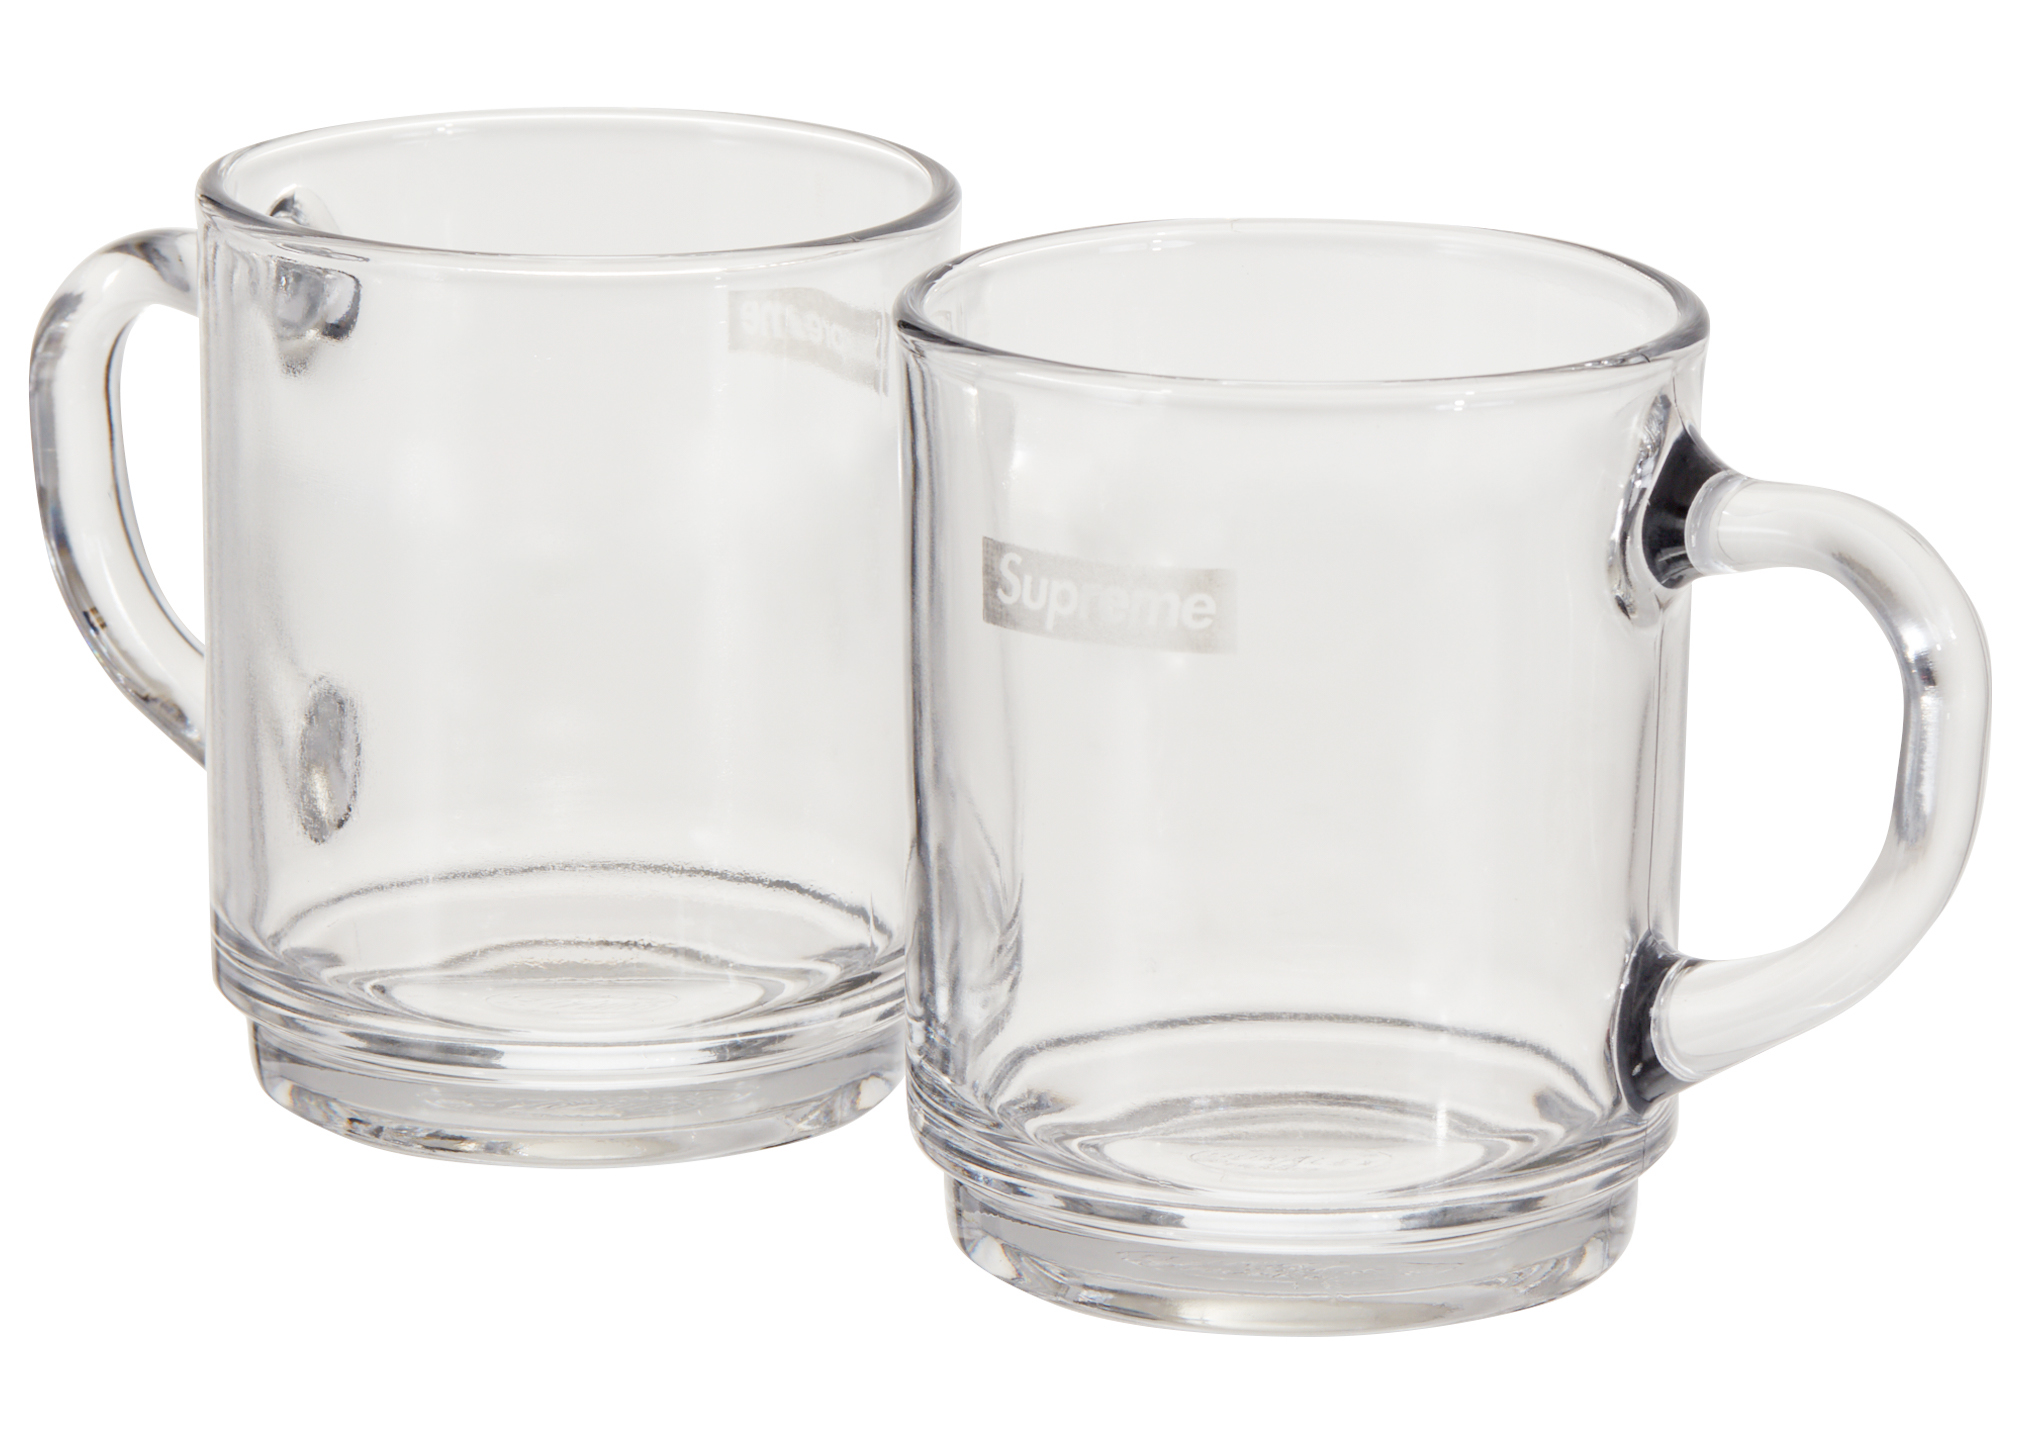 バラ2個セット Supreme®/Duralex Glass Mugs